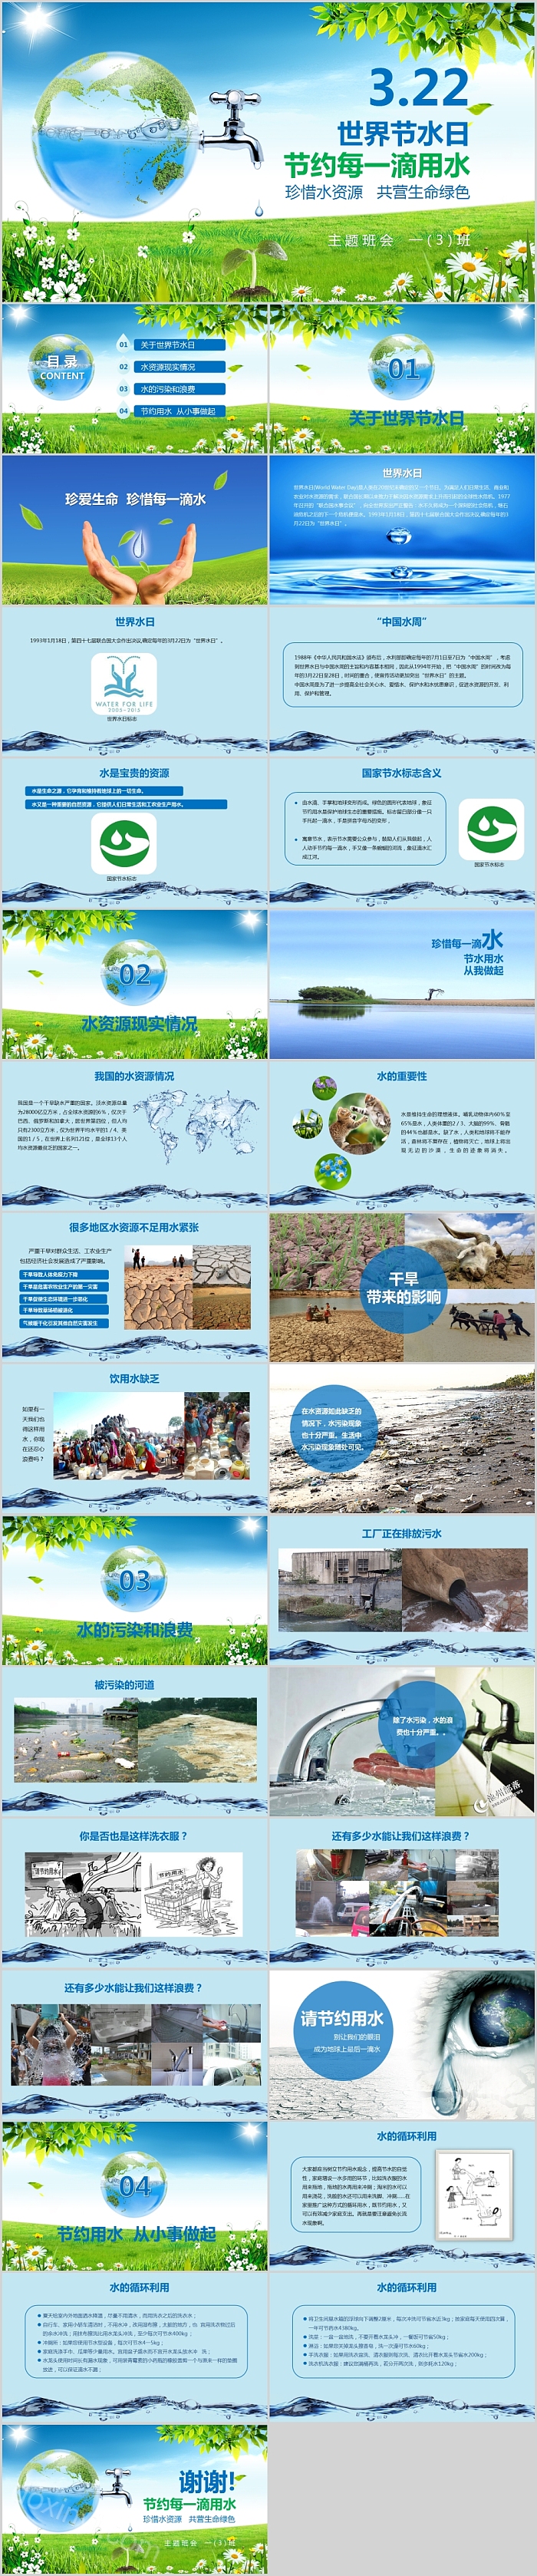 简约清新世界节水日公益宣传PPT